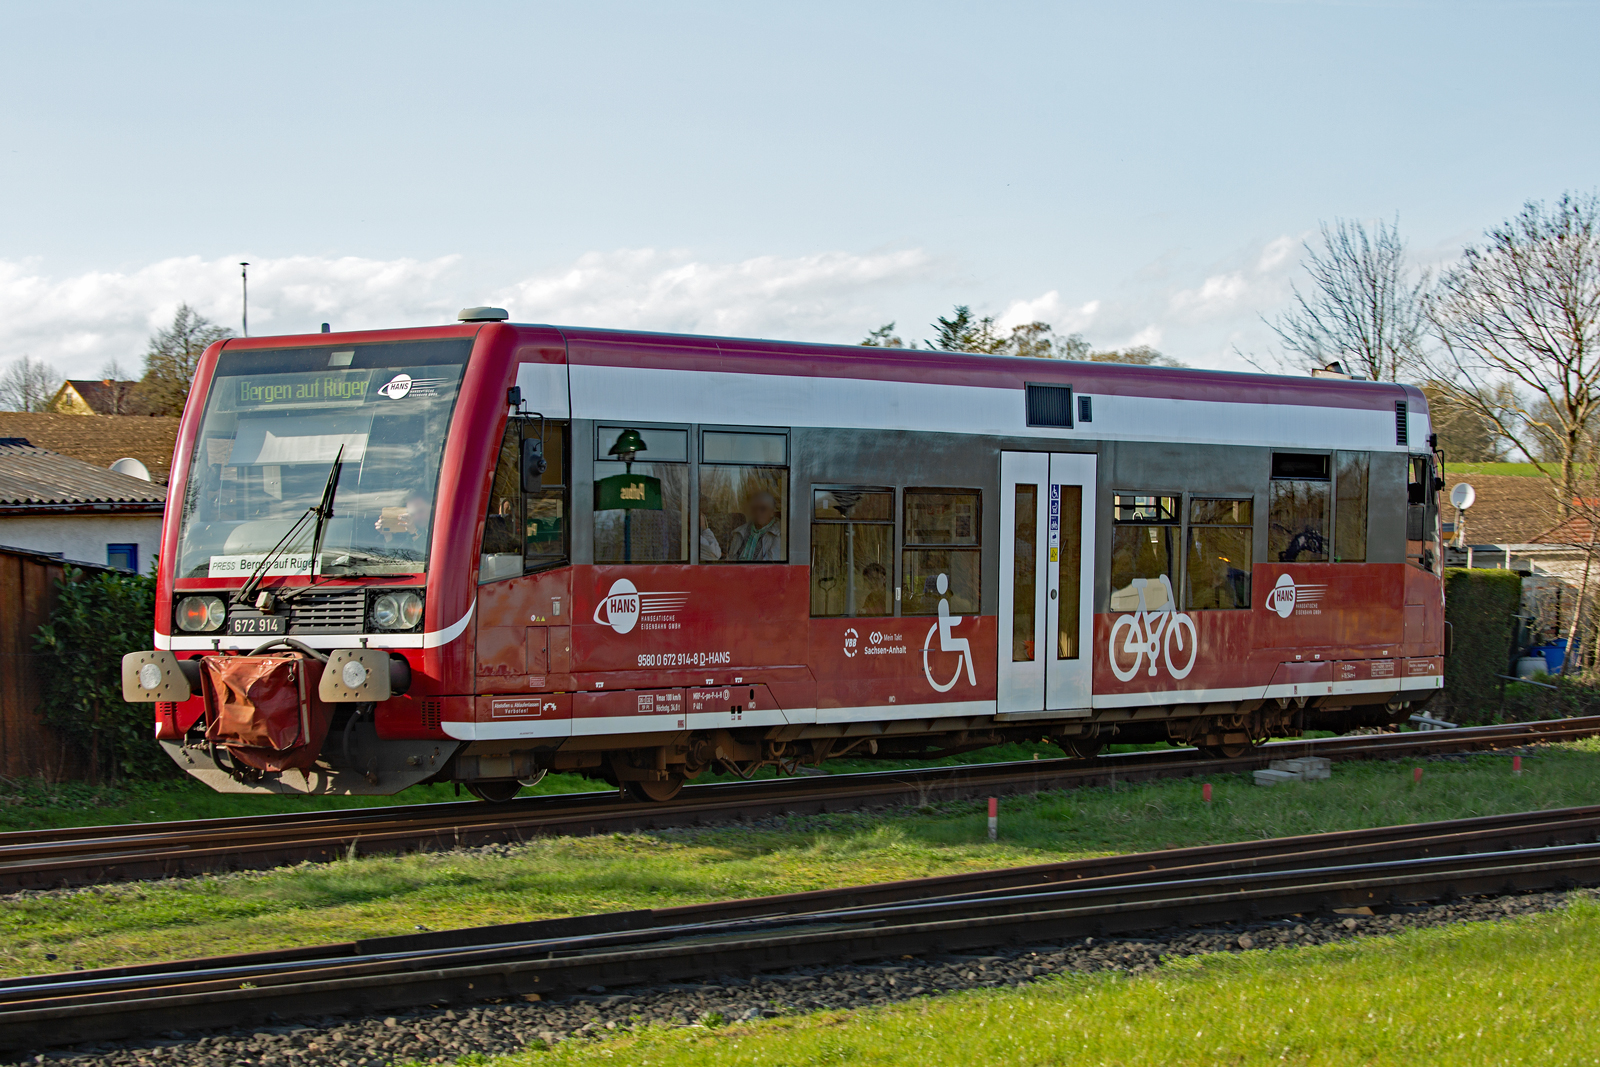  
Hanseatische Eisenbahn mit LVT/S 672 914 auf der Strecke Bergen-Lauterbach Mole mit Spiegelung des Bahnhofsnamen im Fenster des Triebwagens. - 07.04.2024



